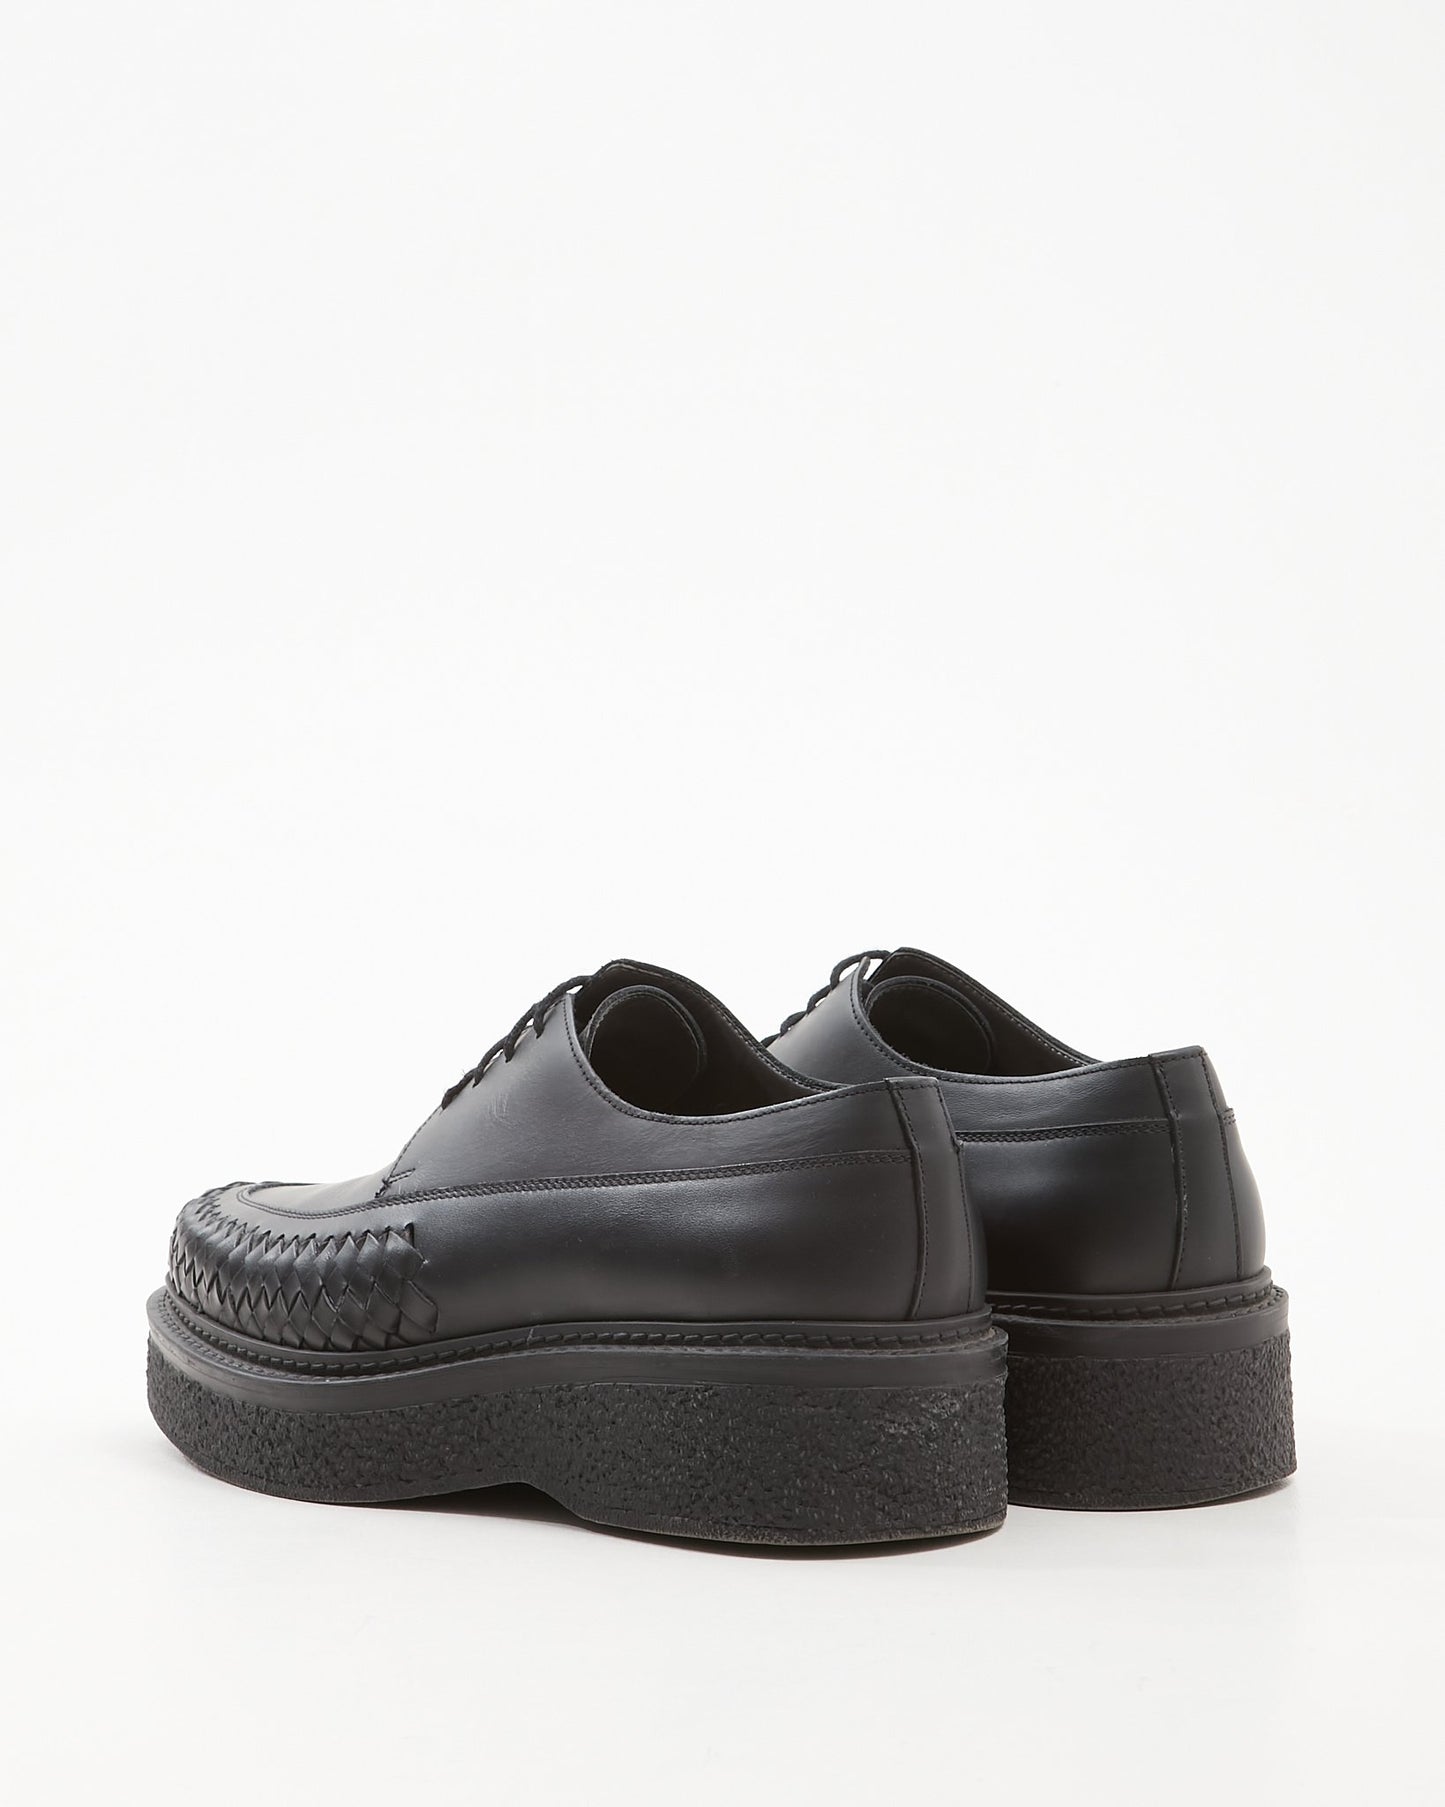 Lanvin MEN'S Black Leather Platform Brogue Men’s Shoes - 8